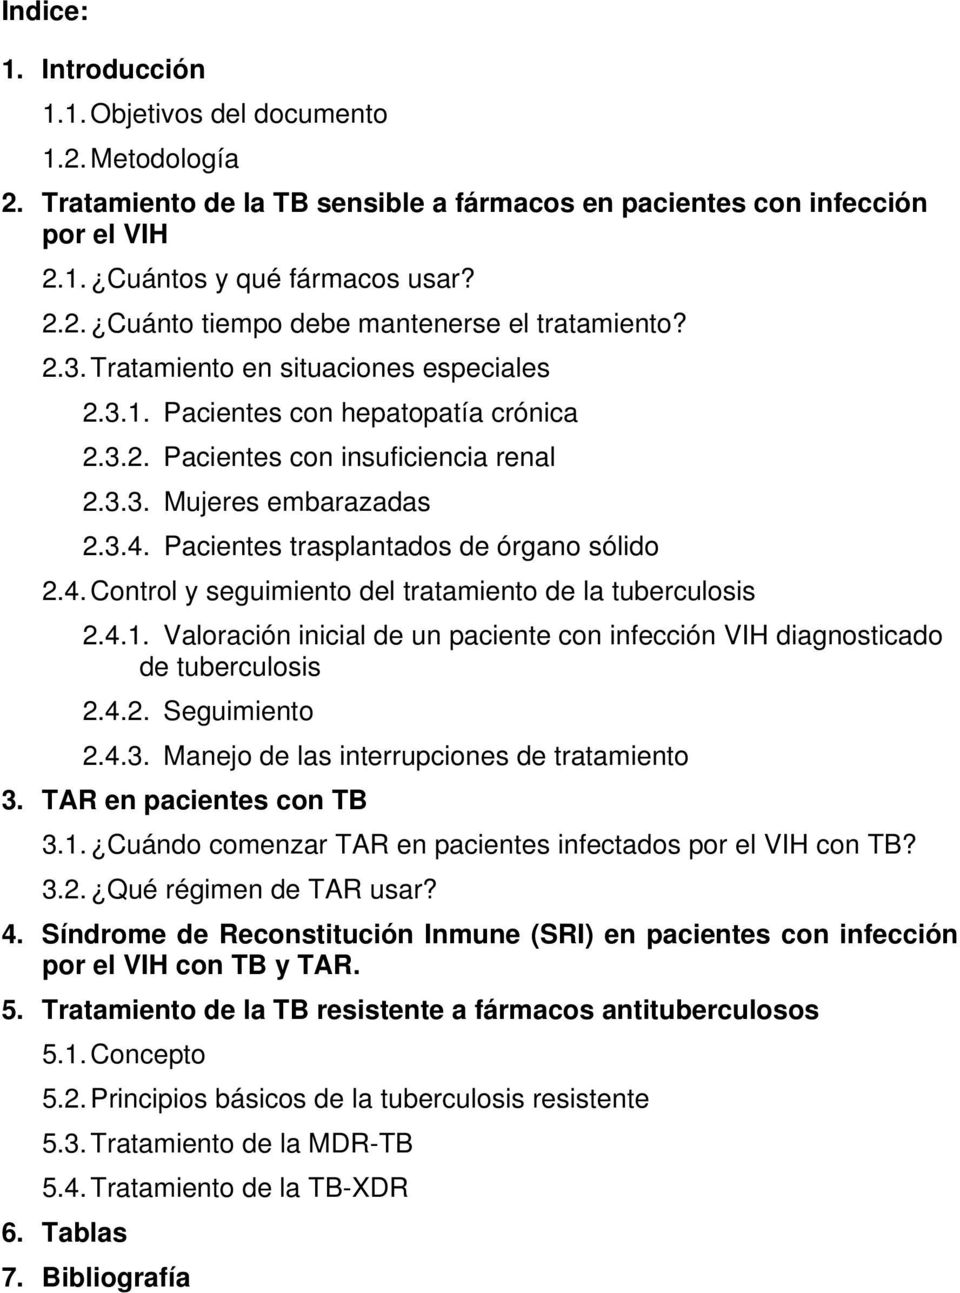 Pacientes trasplantados de órgano sólido 2.4. Control y seguimiento del tratamiento de la tuberculosis 2.4.1. Valoración inicial de un paciente con infección VIH diagnosticado de tuberculosis 2.4.2. Seguimiento 2.